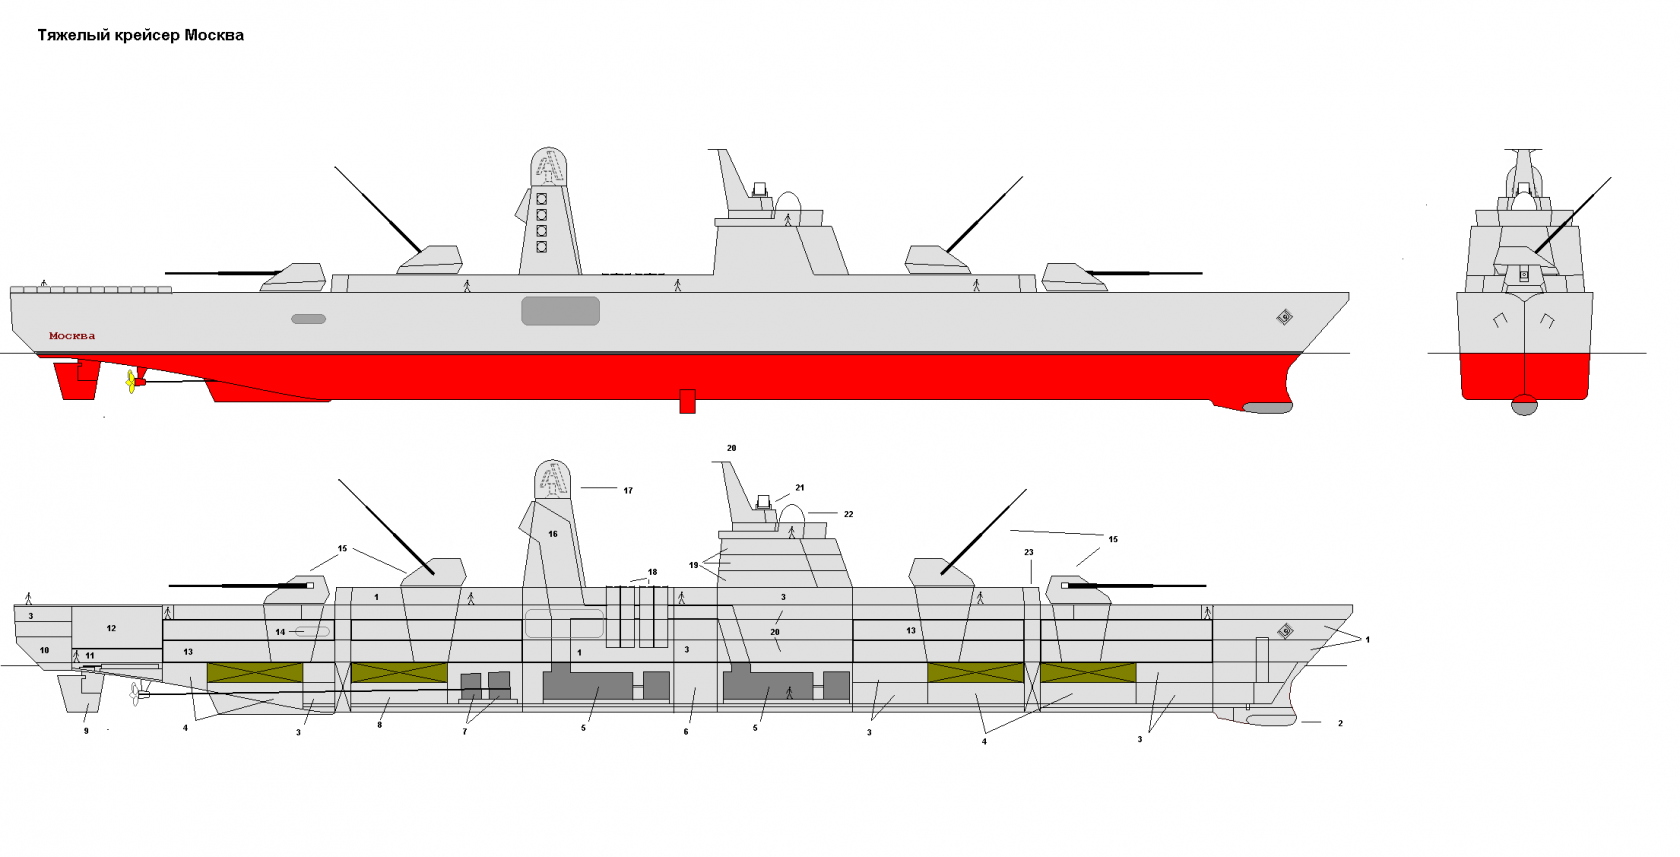 Перспективный крейсер с артиллерийским вооружением, как корабль будущего.